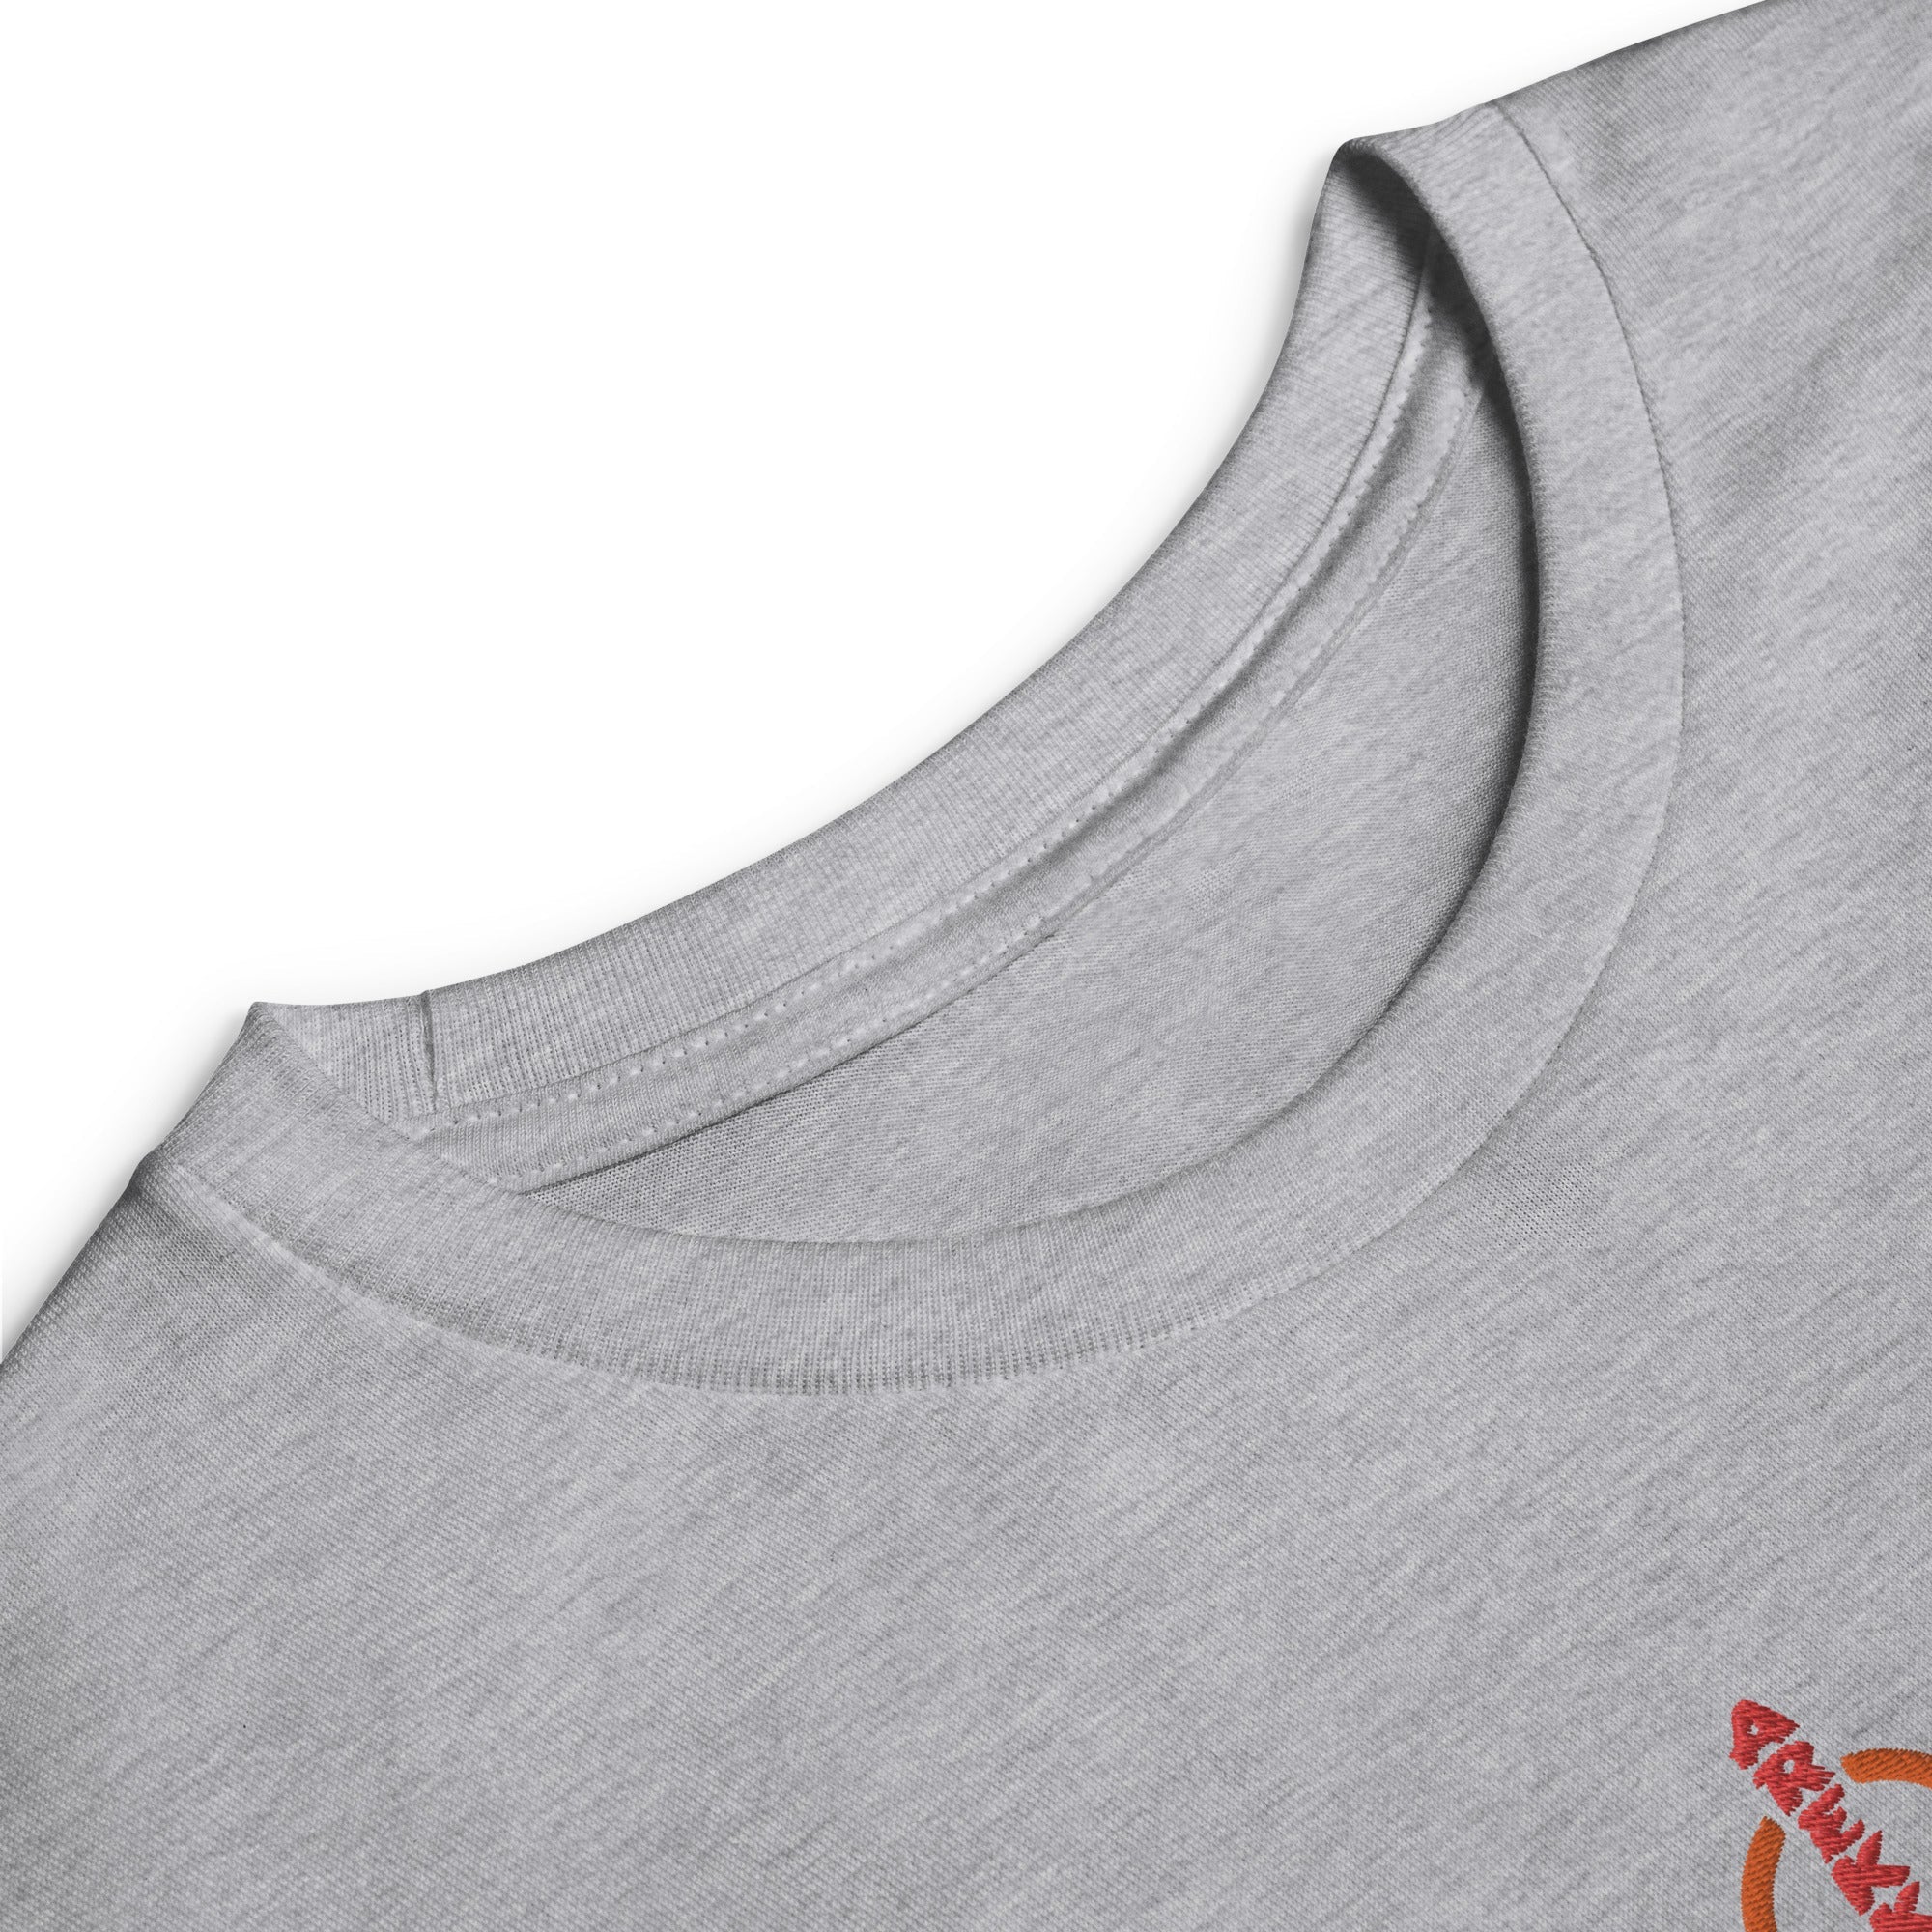 Unisex Youth Long Sleeve Shirt-14